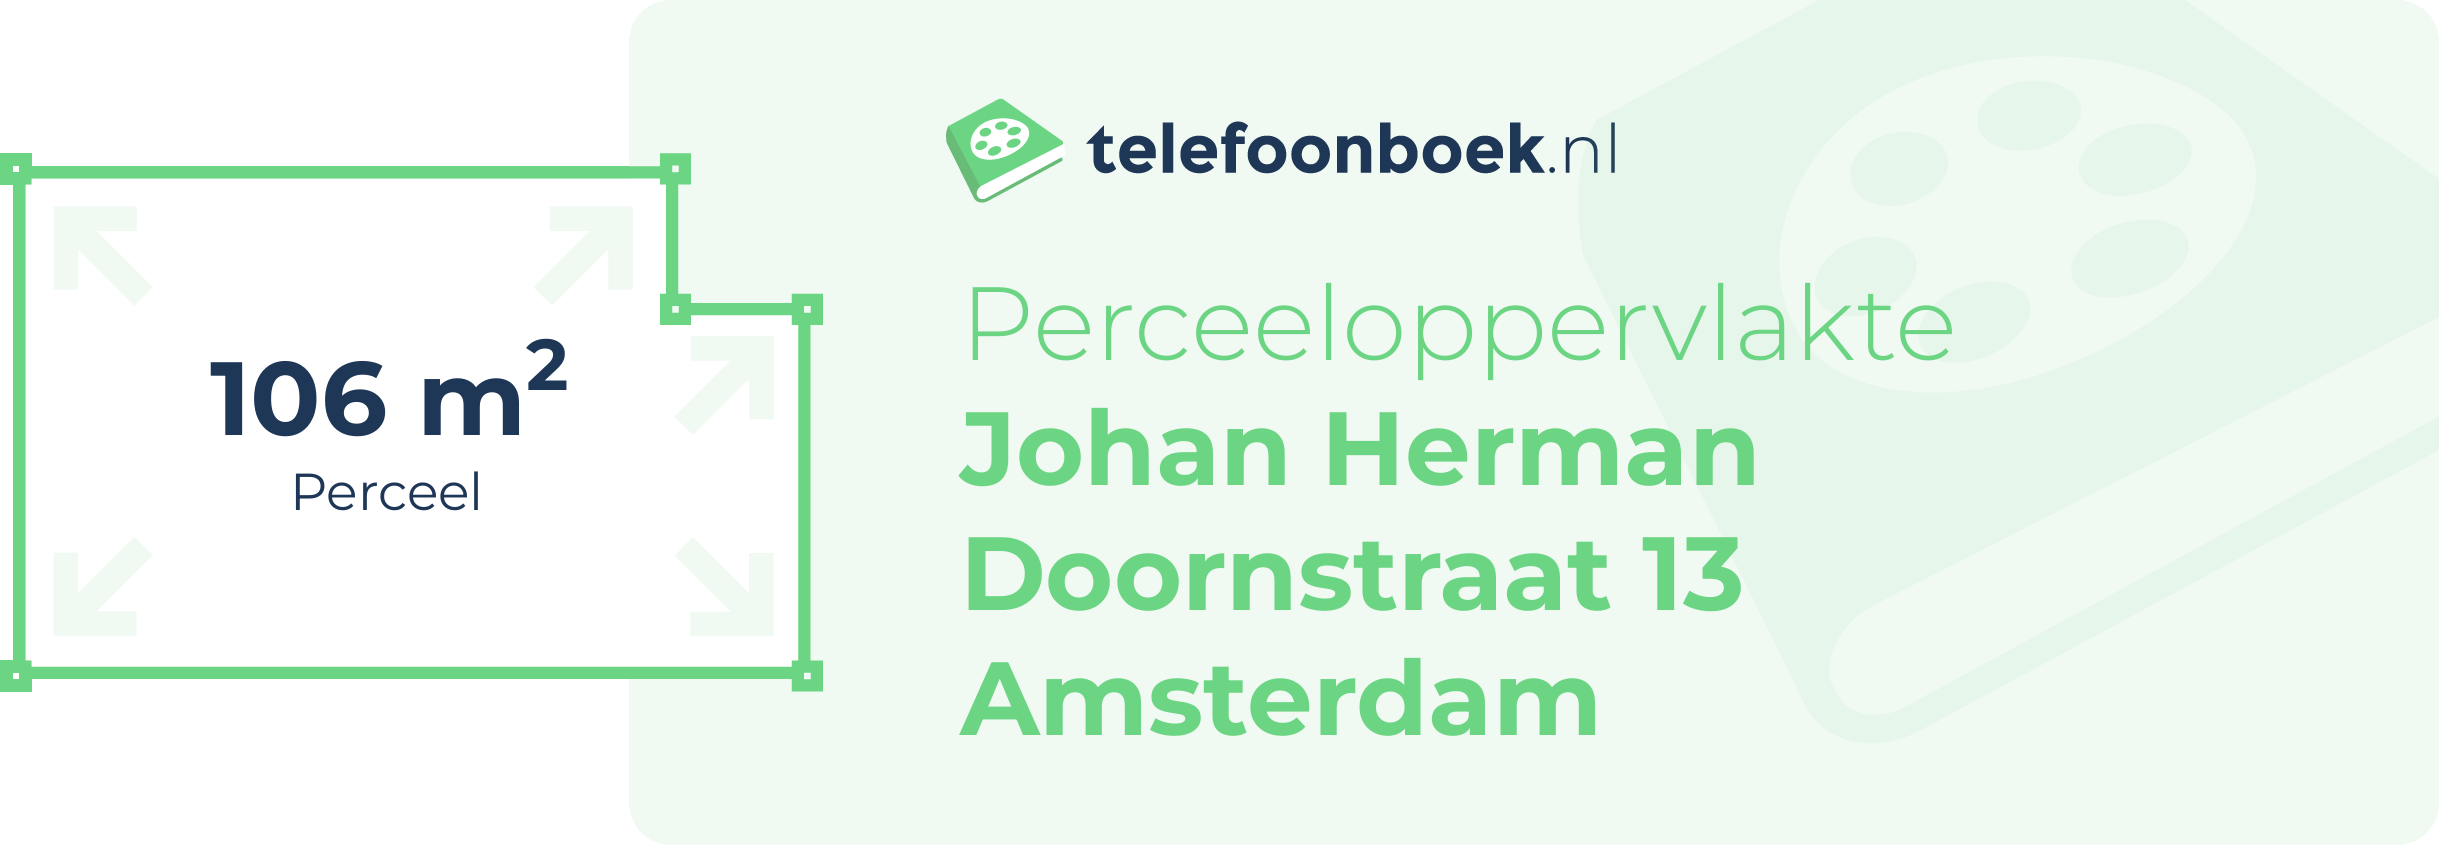 Perceeloppervlakte Johan Herman Doornstraat 13 Amsterdam